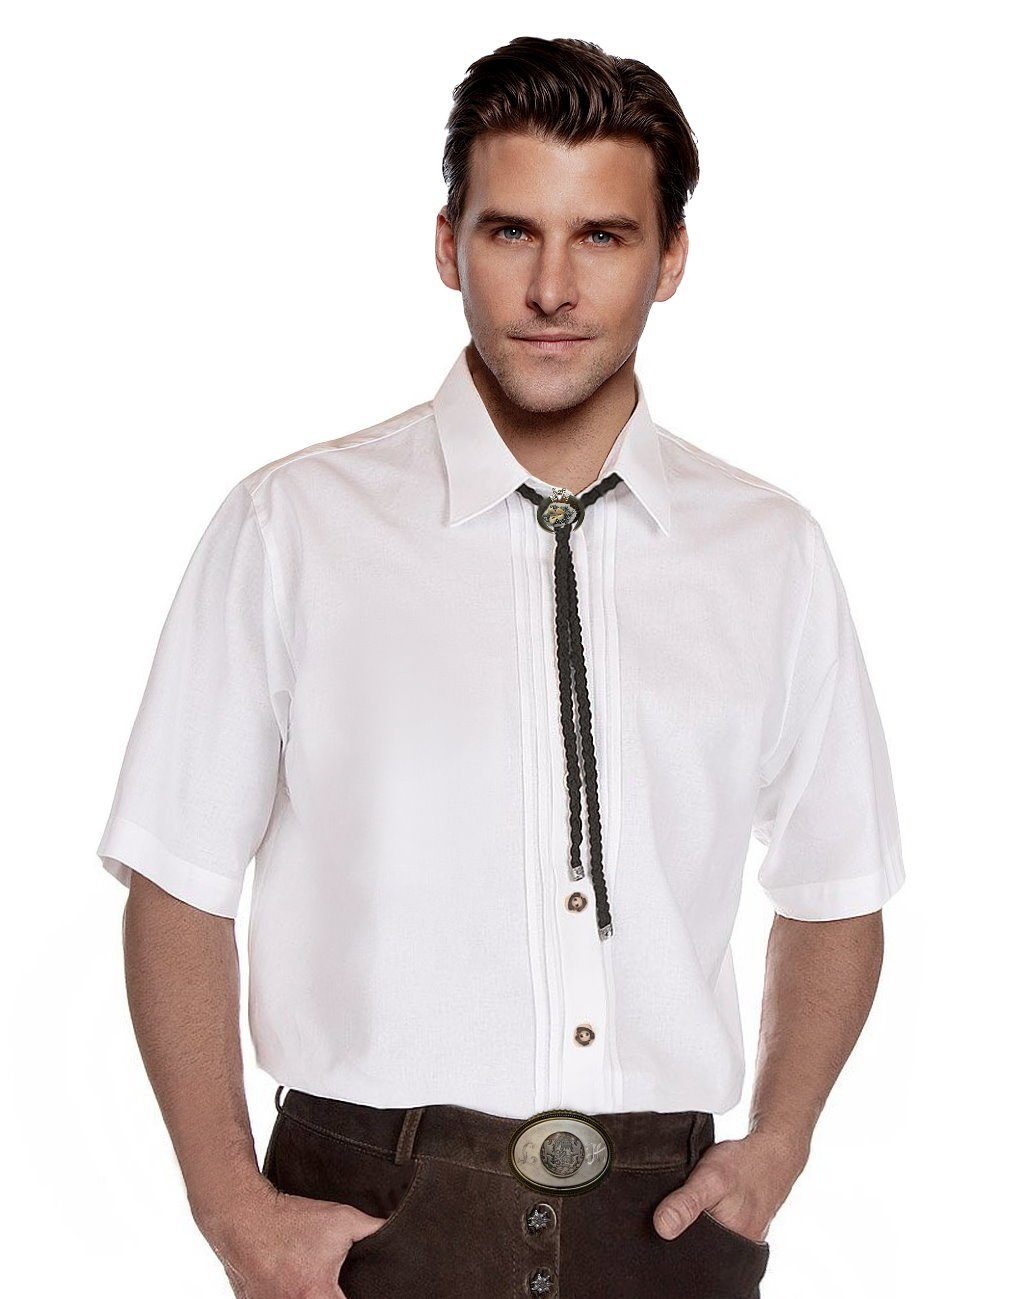 Trachtenhemd Trachtenhemd mit Weiß Moschen-Bayern Kurzarm klassischen Herrenhemd Herren Wiesn-Hemd Biesen